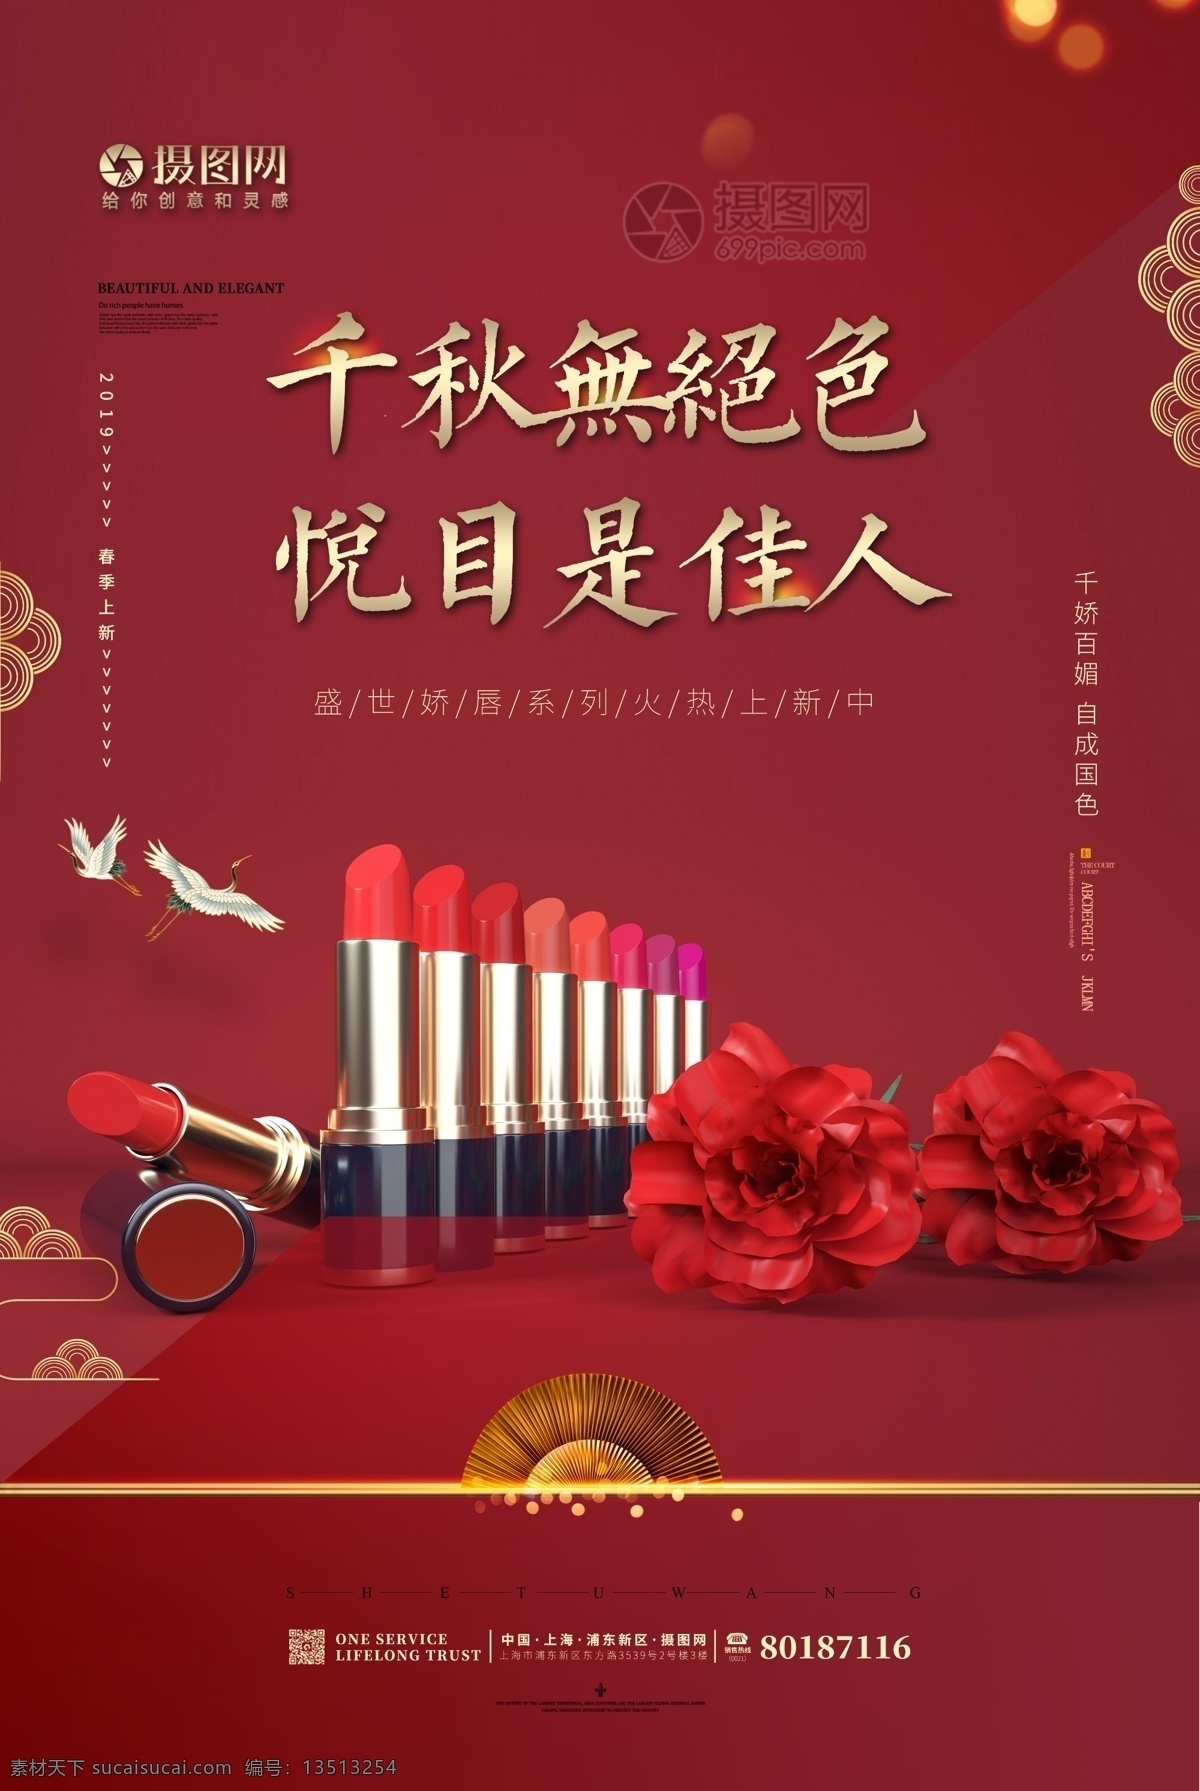 中国 风 口红 奢华 大气 化妆品 海报 中国风 中国风口红 化妆品海报 彩妆 口红上新 高端 极致美